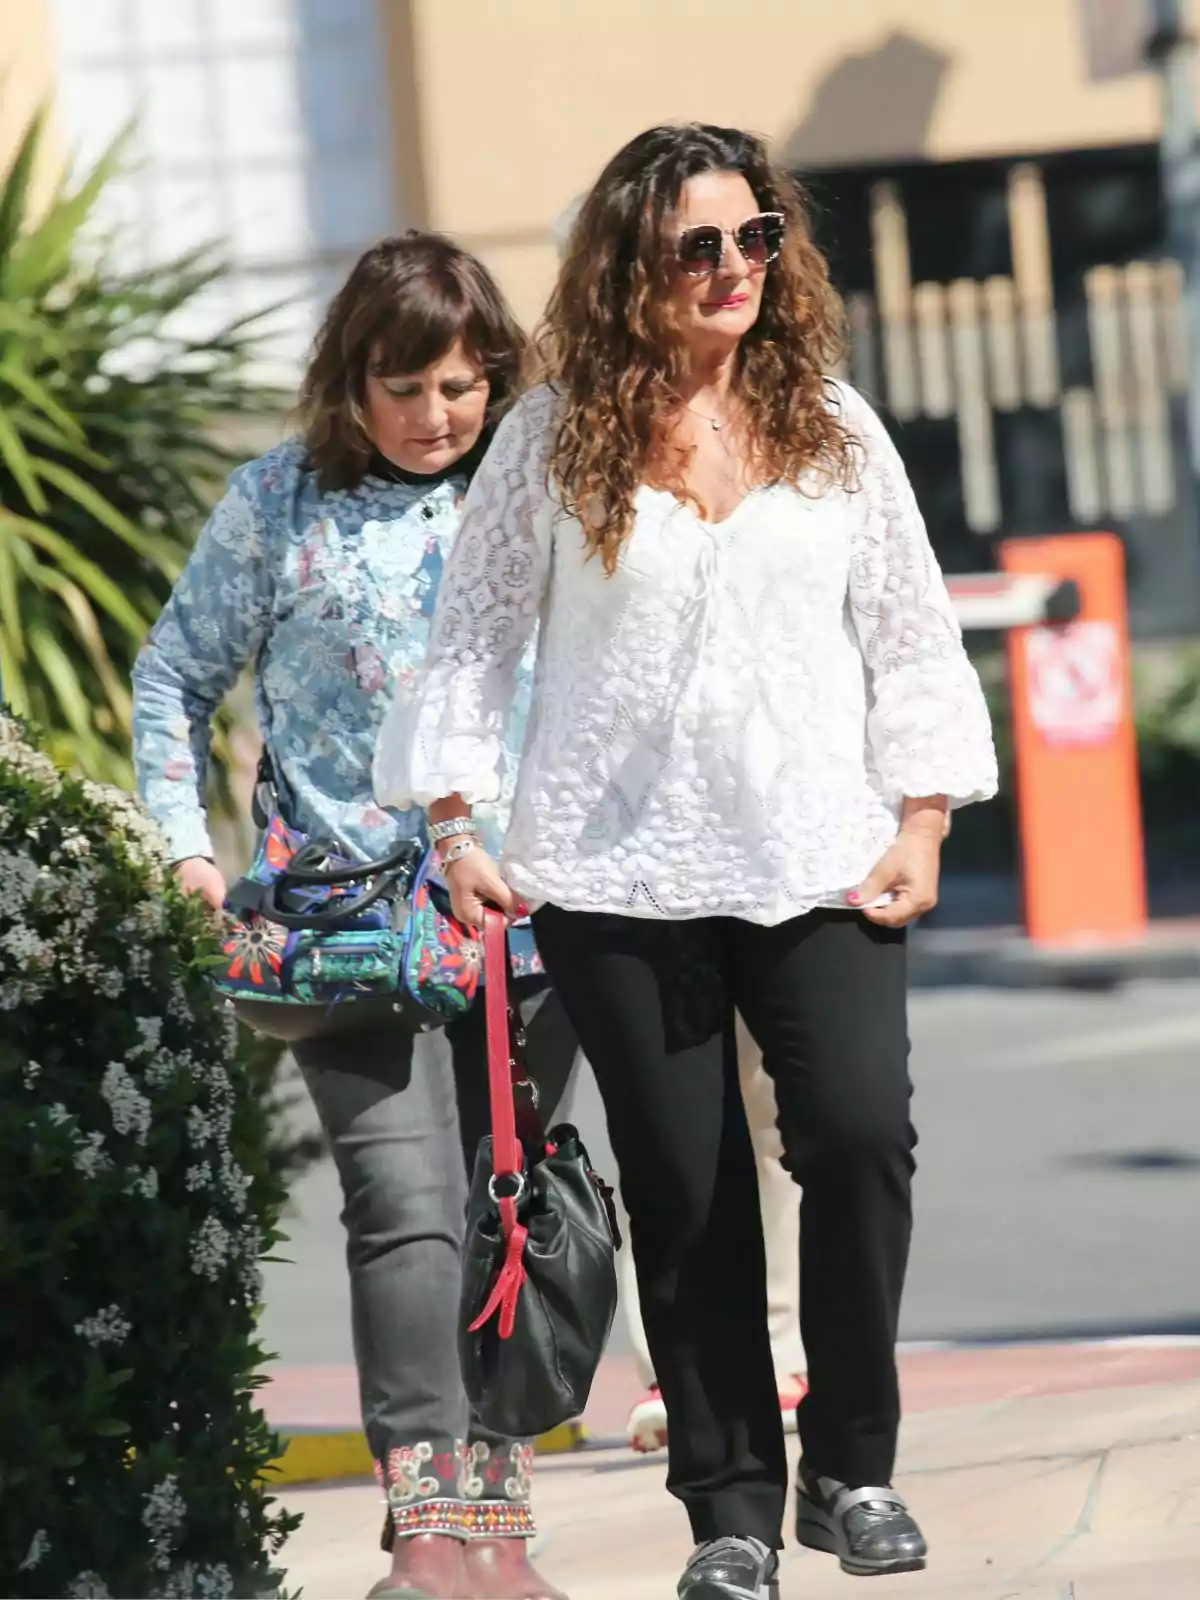 Esther Vázquez y Ana Vázquez caminando por la calle, una con blusa blanca y gafas de sol, la otra con blusa azul estampada y bolso colorido.